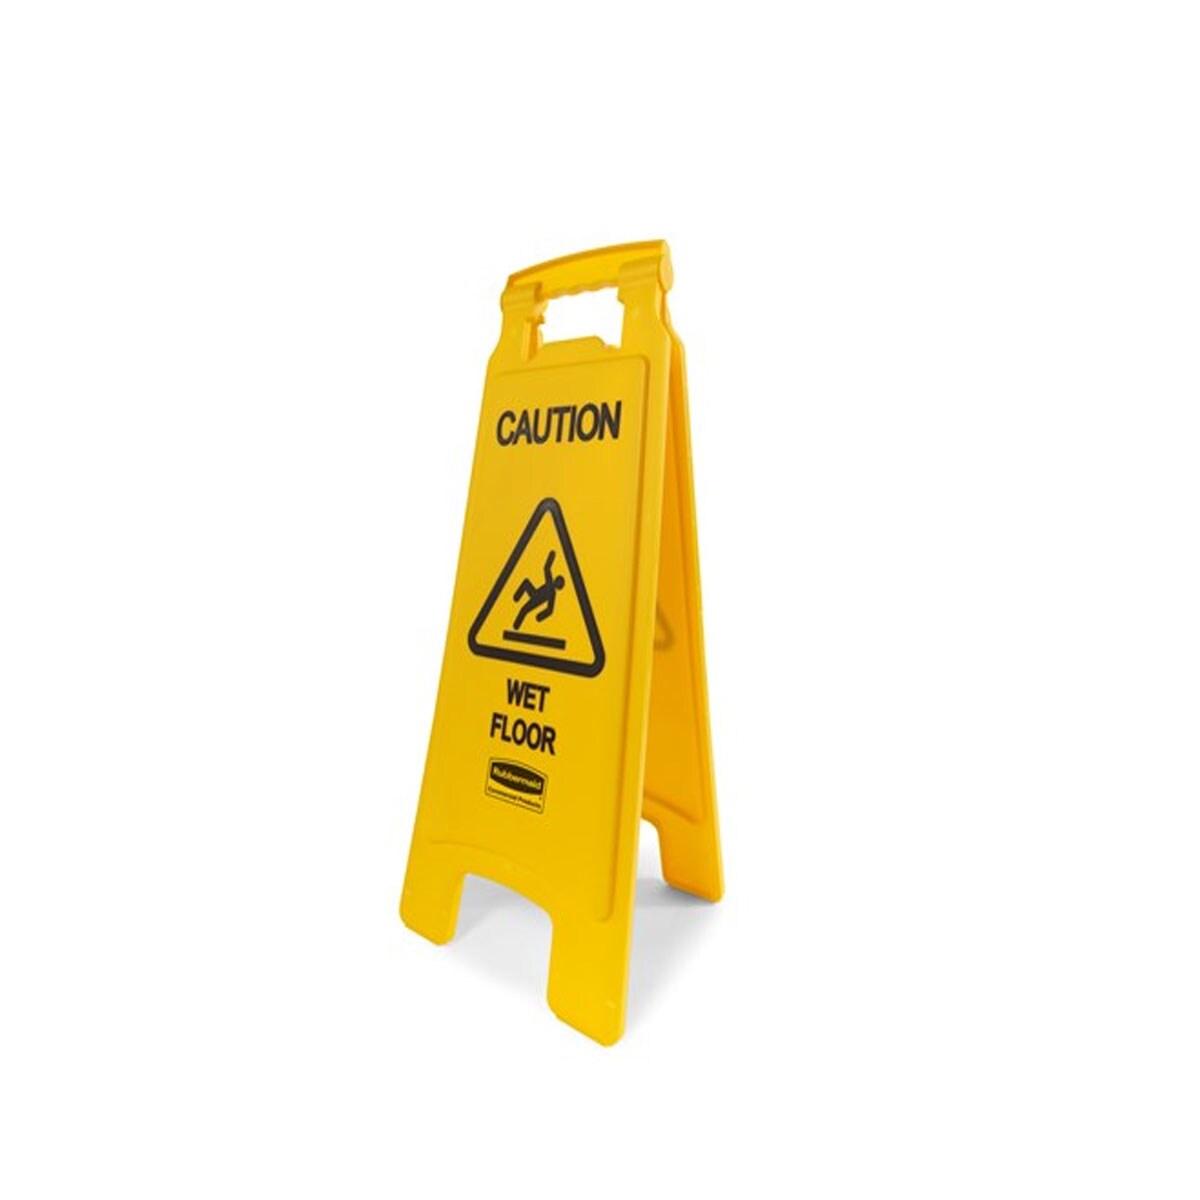 ป้ายตั้งพื้นเตือนกันลื่น Rubbermaid มีสกรีน [ Caution Wet Floor ] ทั้ง 2 ด้าน สีเหลือง ได้มาตรฐาน ANSI/OSHA